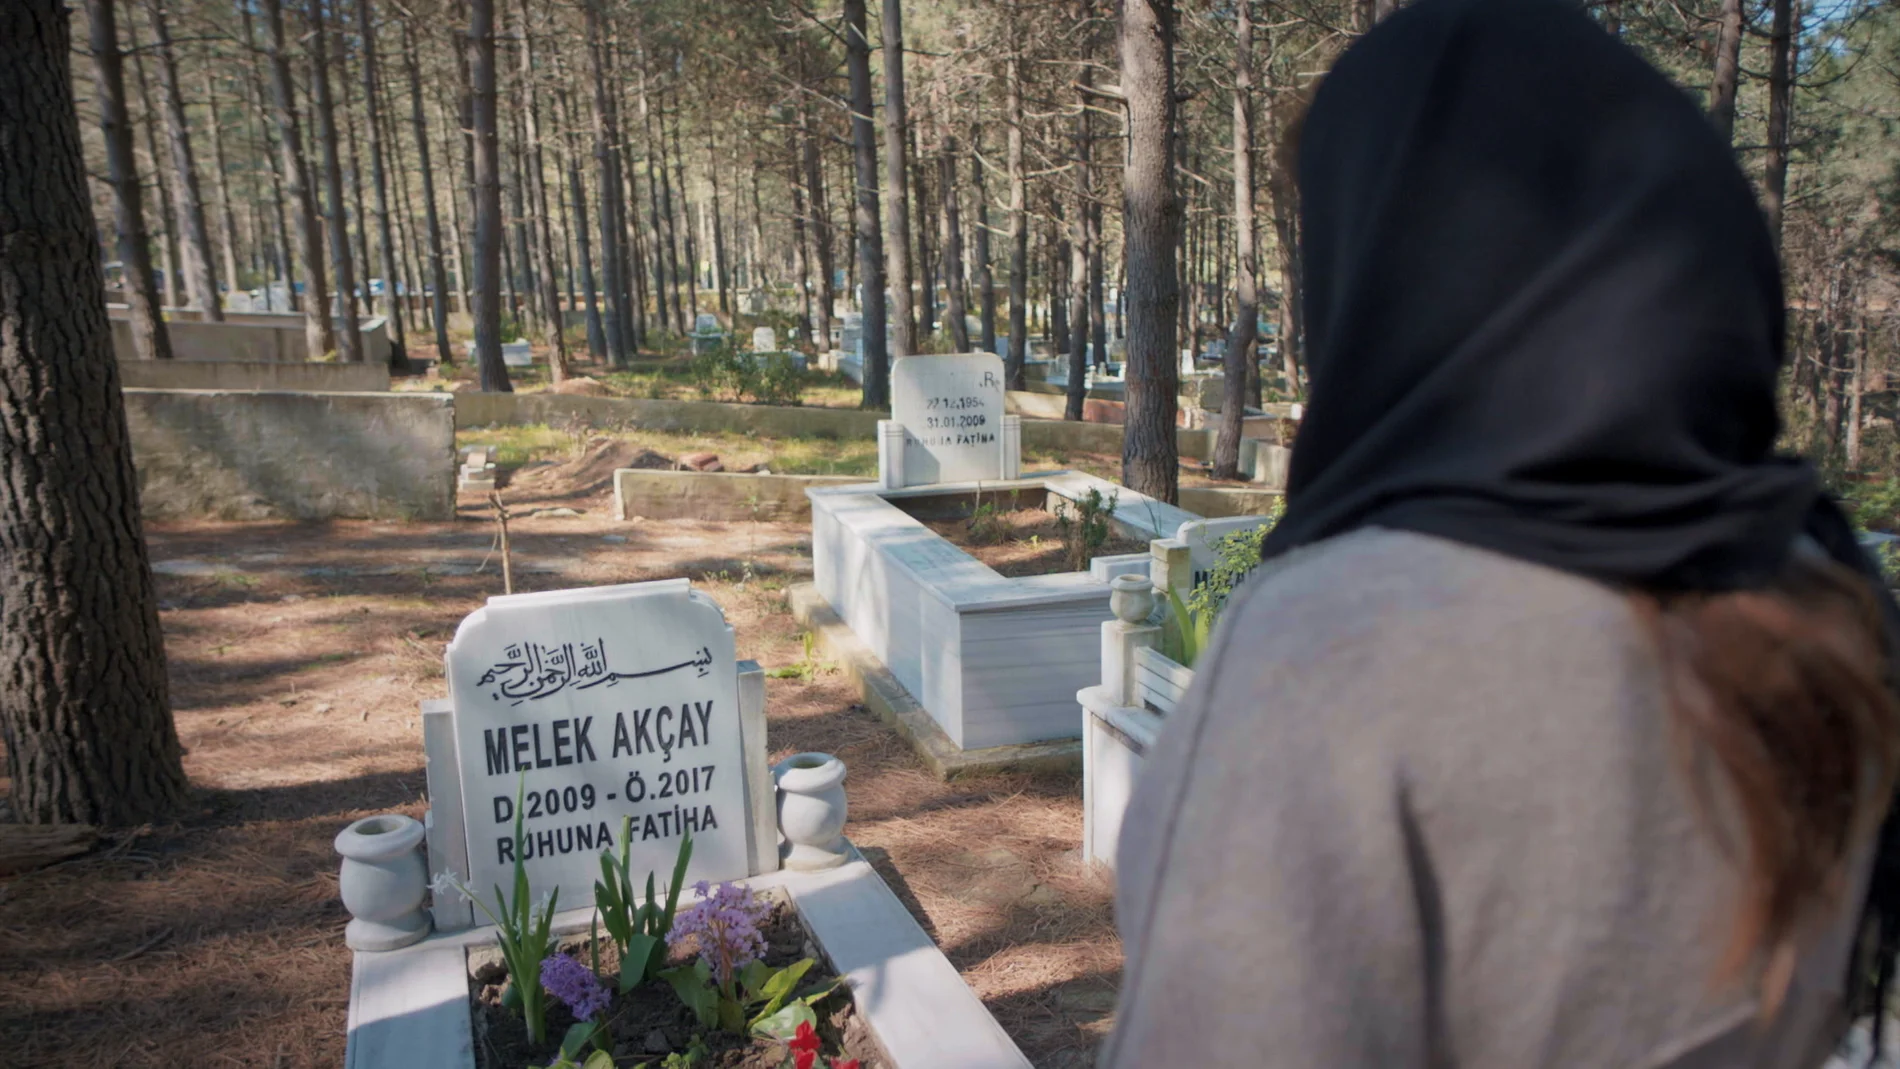 Turna ha muerto: Zeynep visita la tumba de su hija